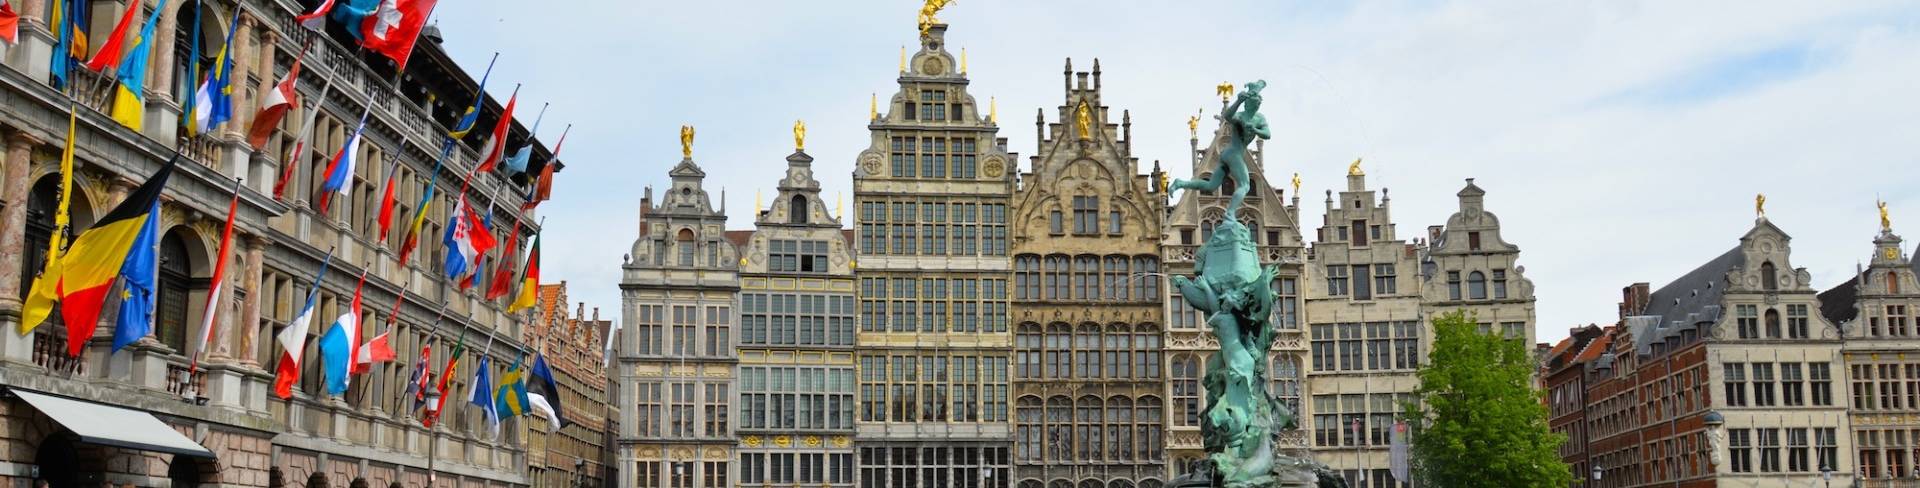 Антверпен - город в Бельгии